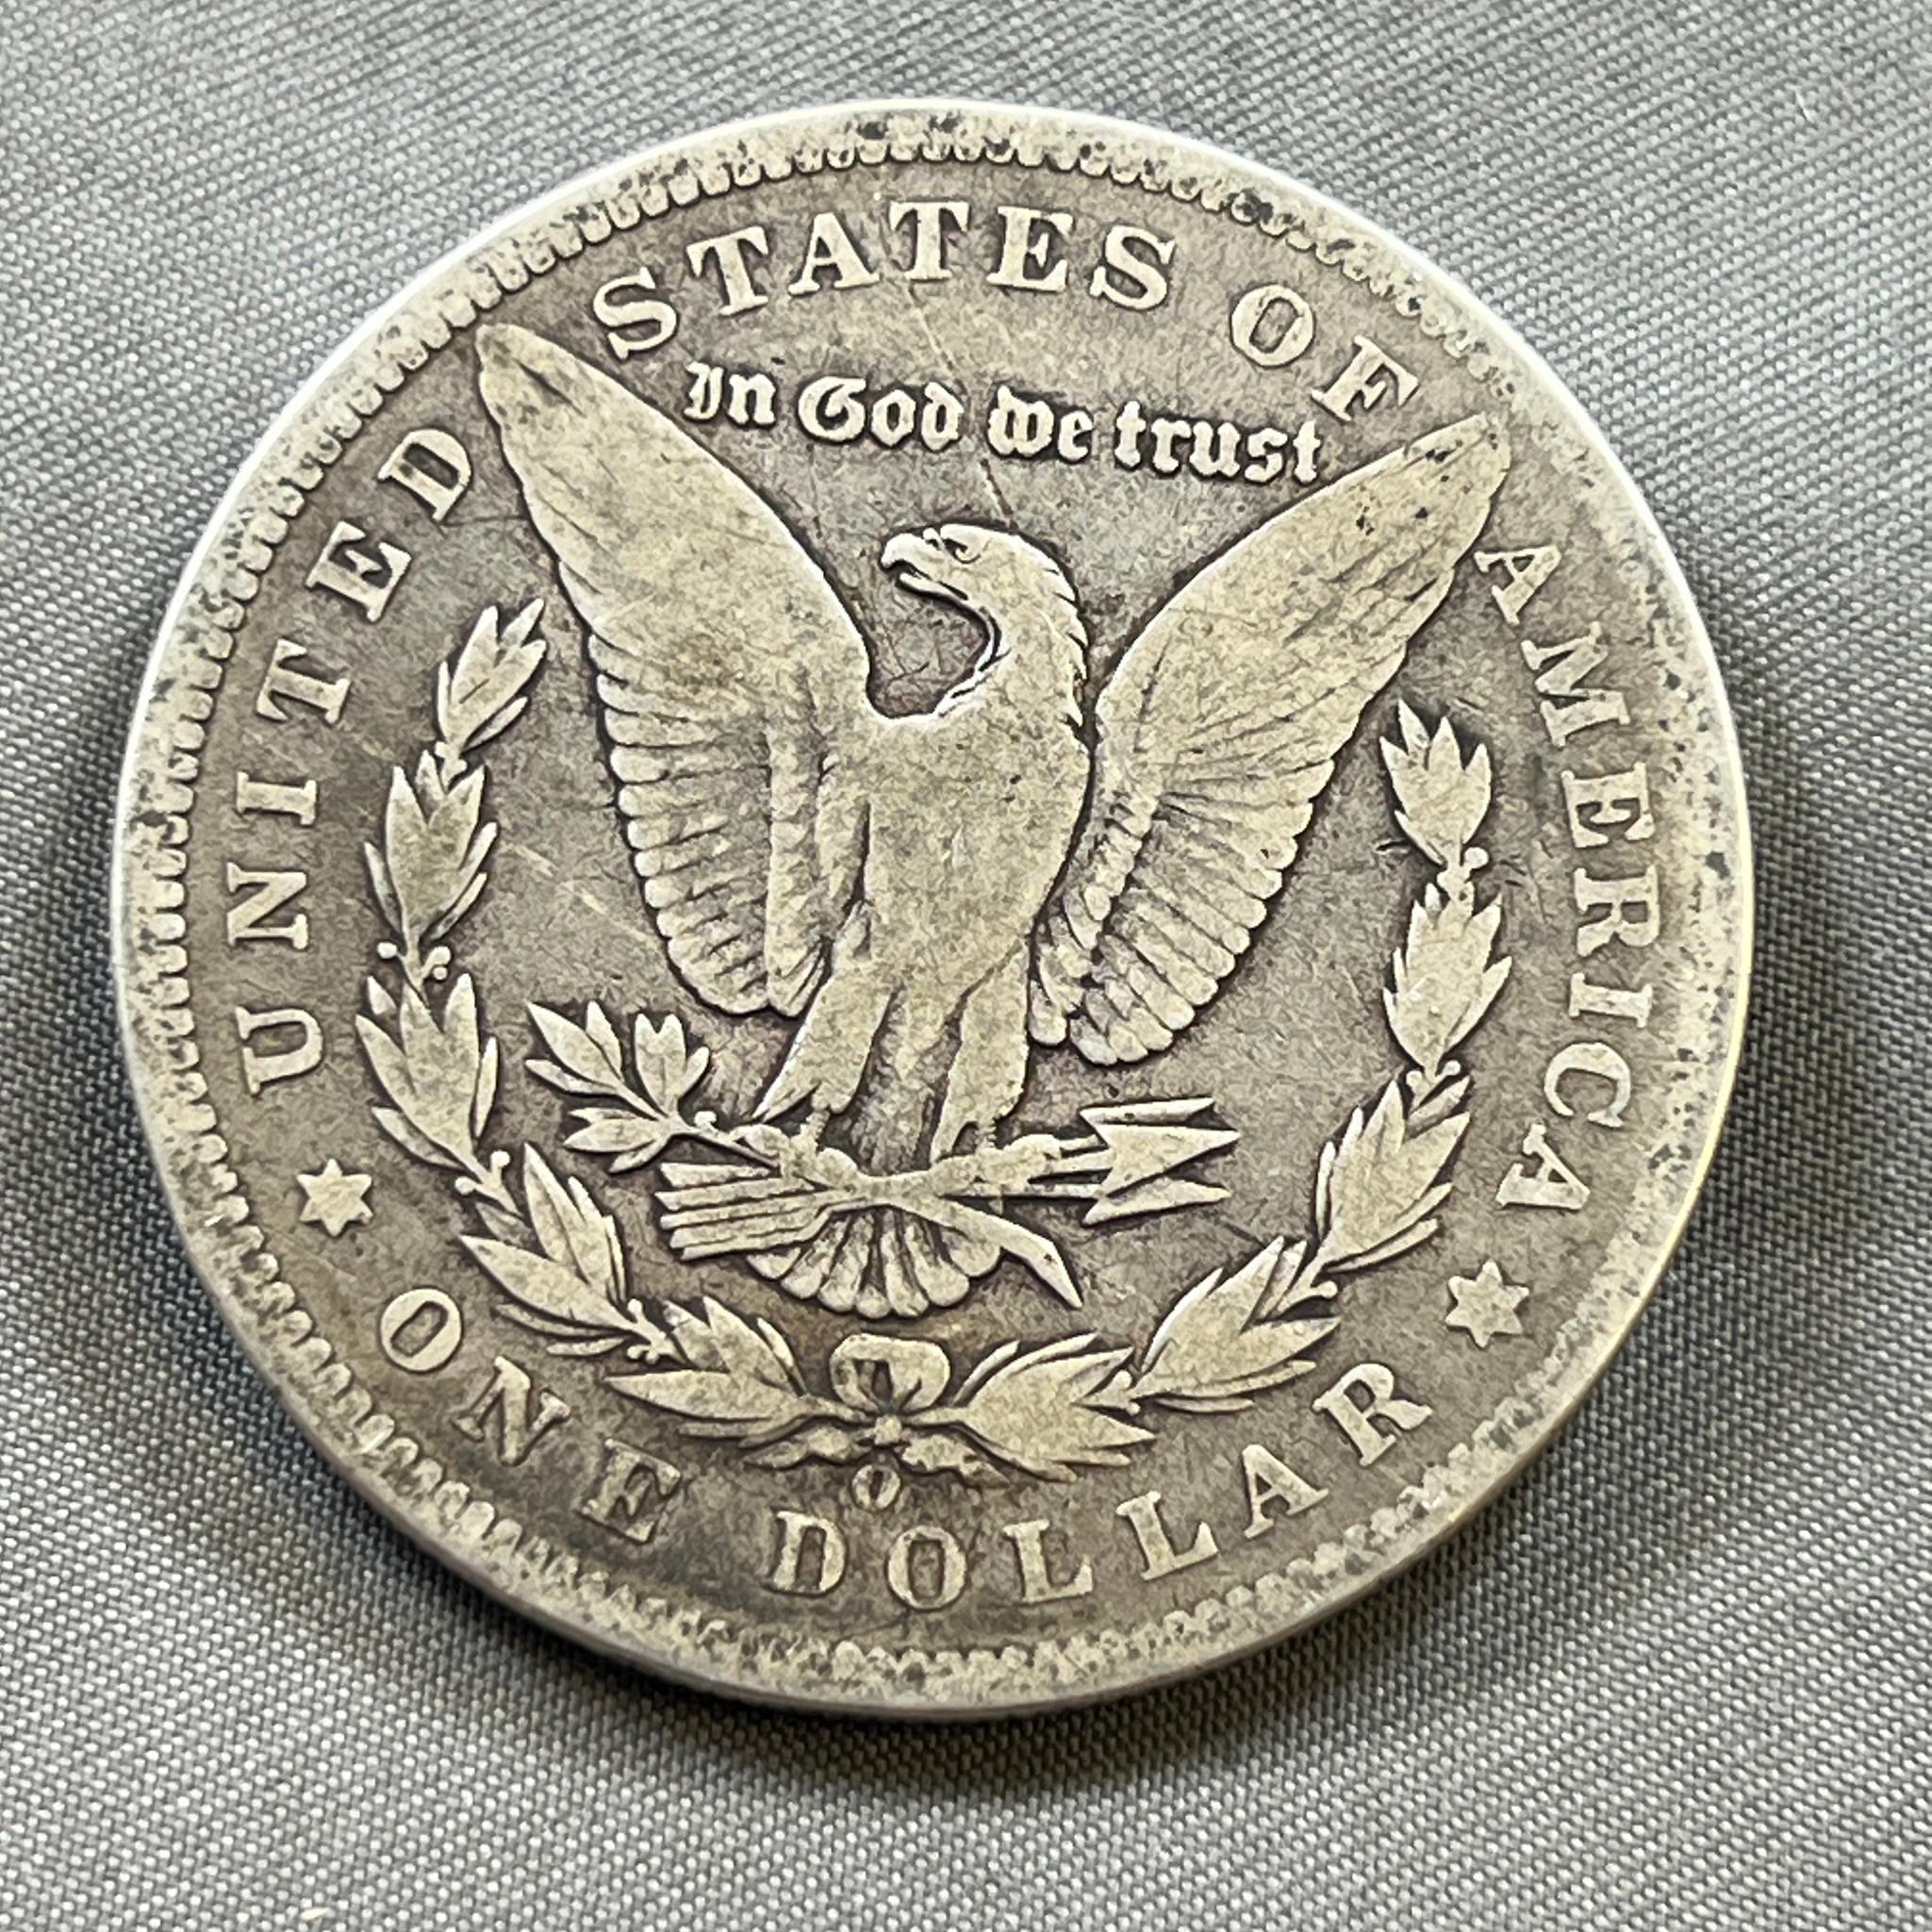 1899-O Morgan Silver Dollar, 90% Silver